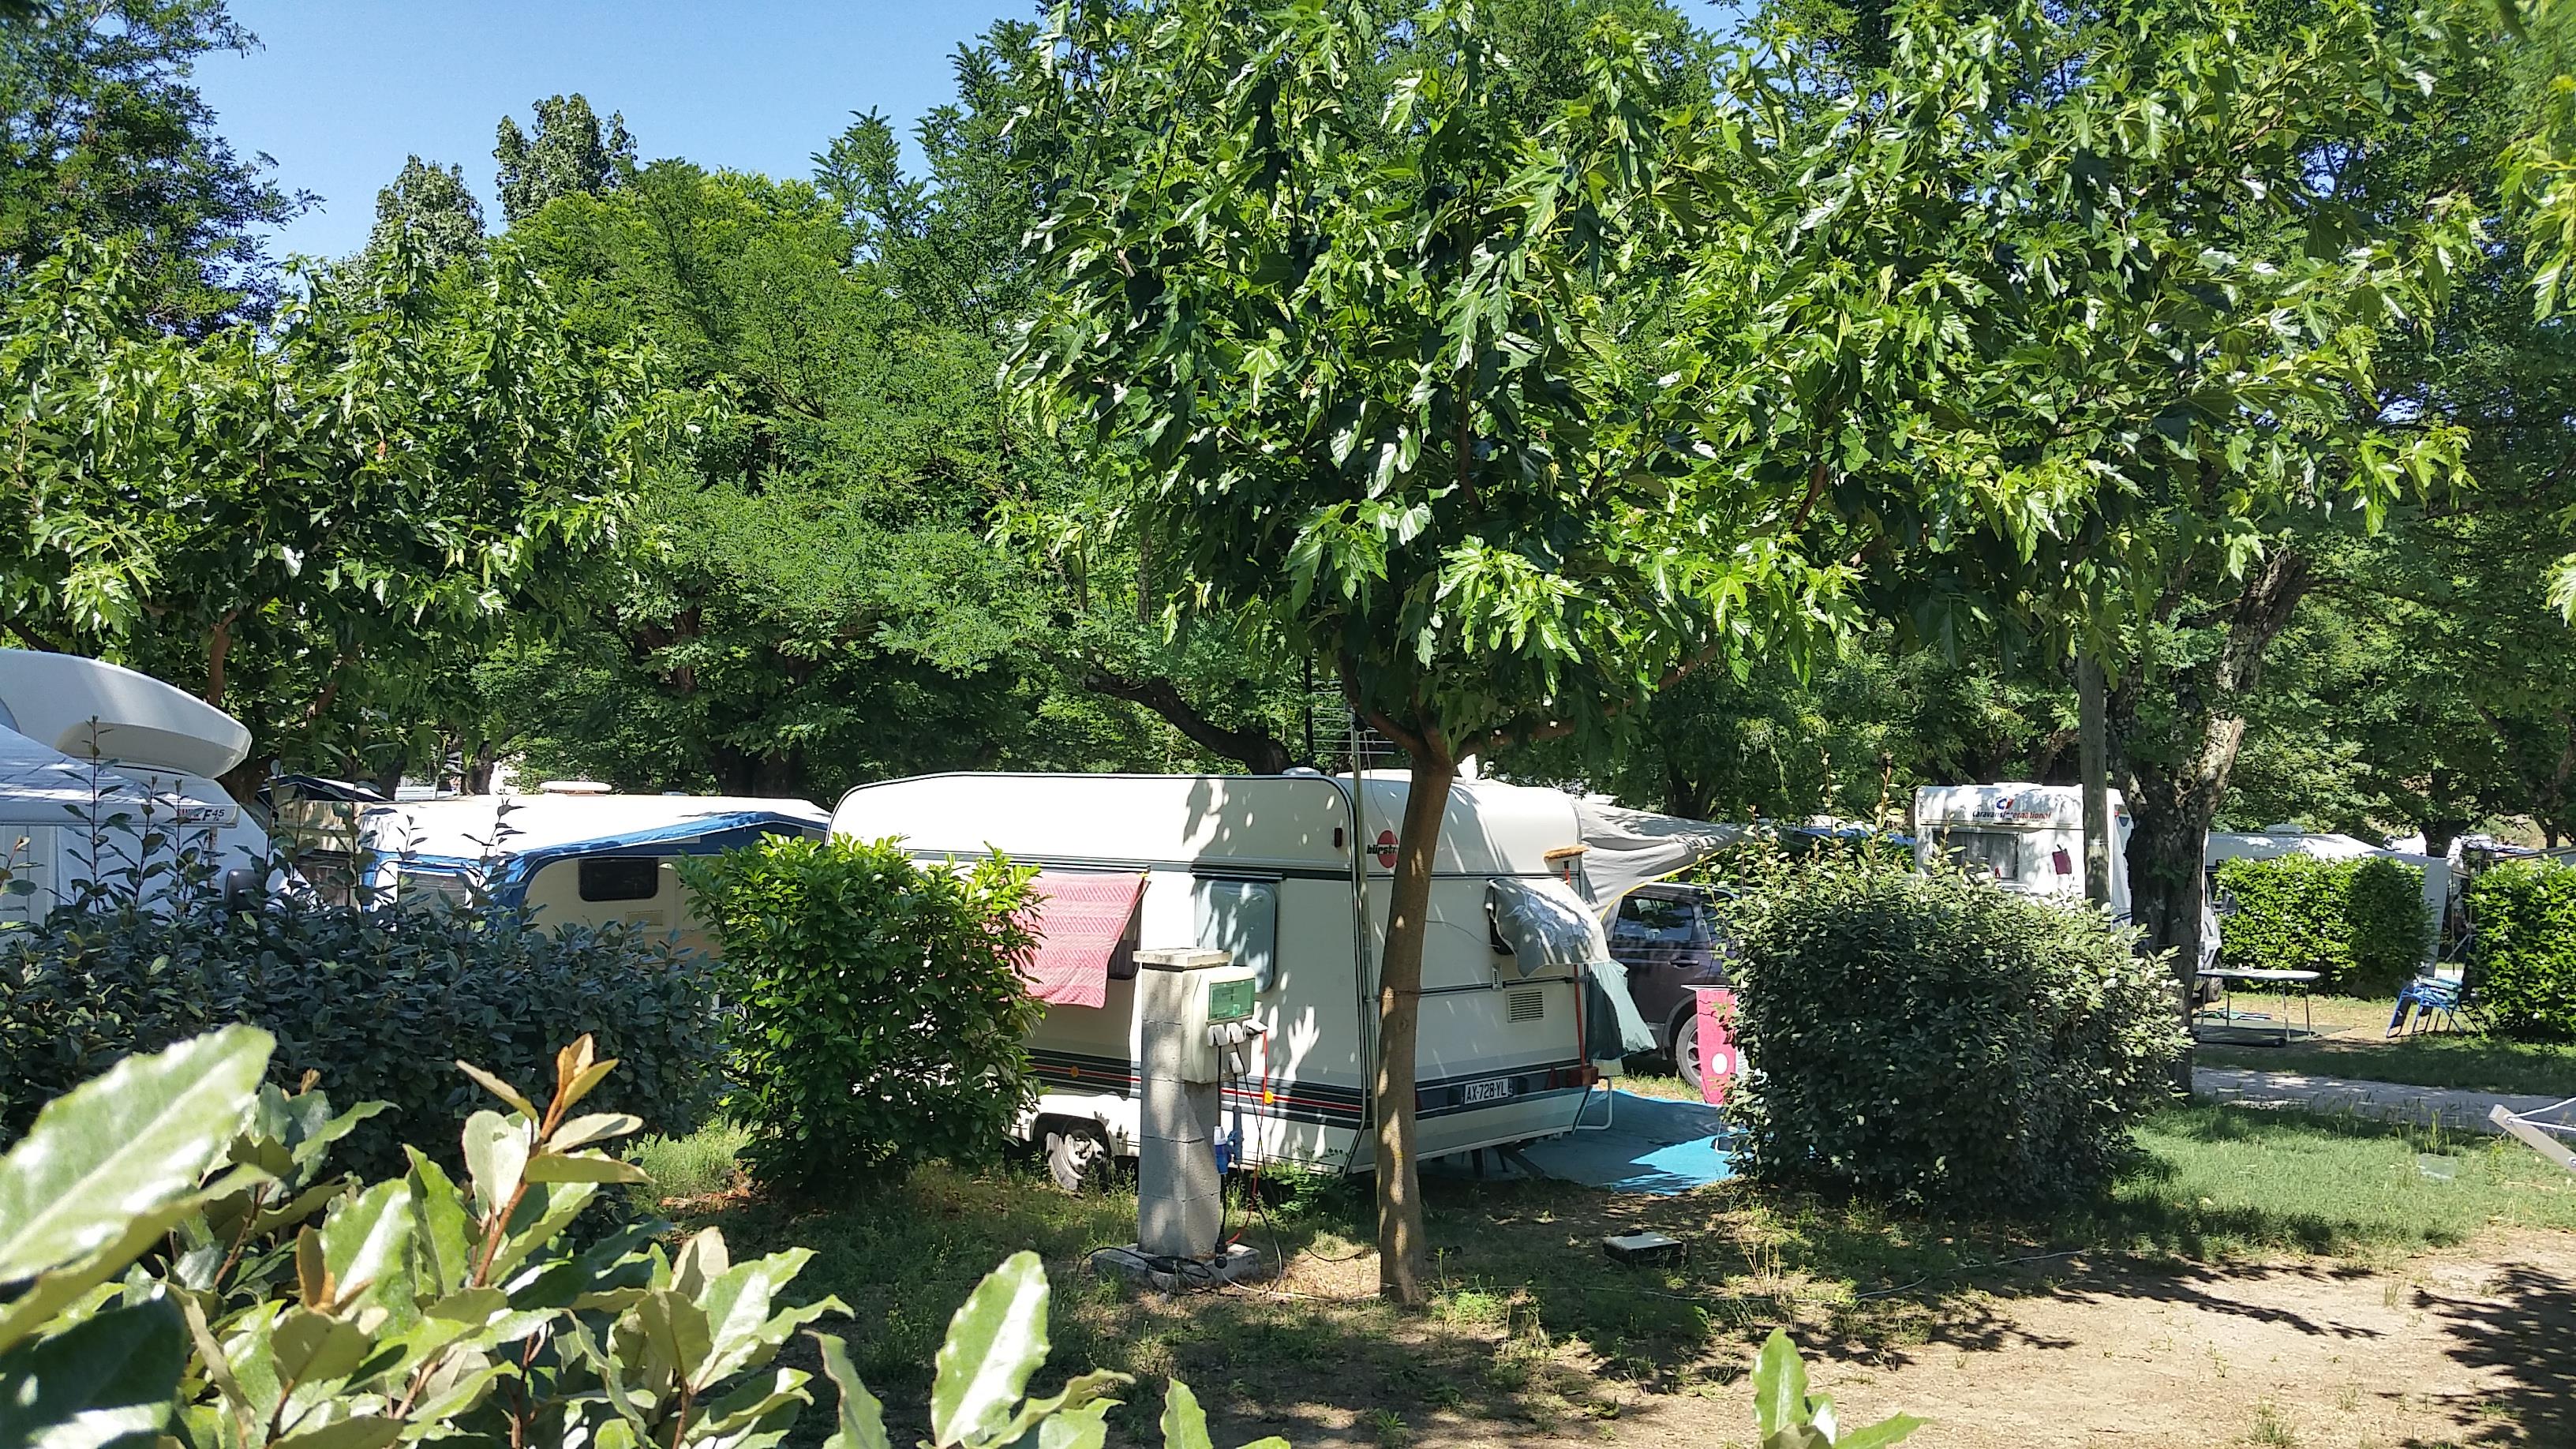 Emplacement - Emplacement Camping  2 Personnes + 1 Véhicule Ou Camping Car + Électricité 10A + Wifi Inclus - International Camping